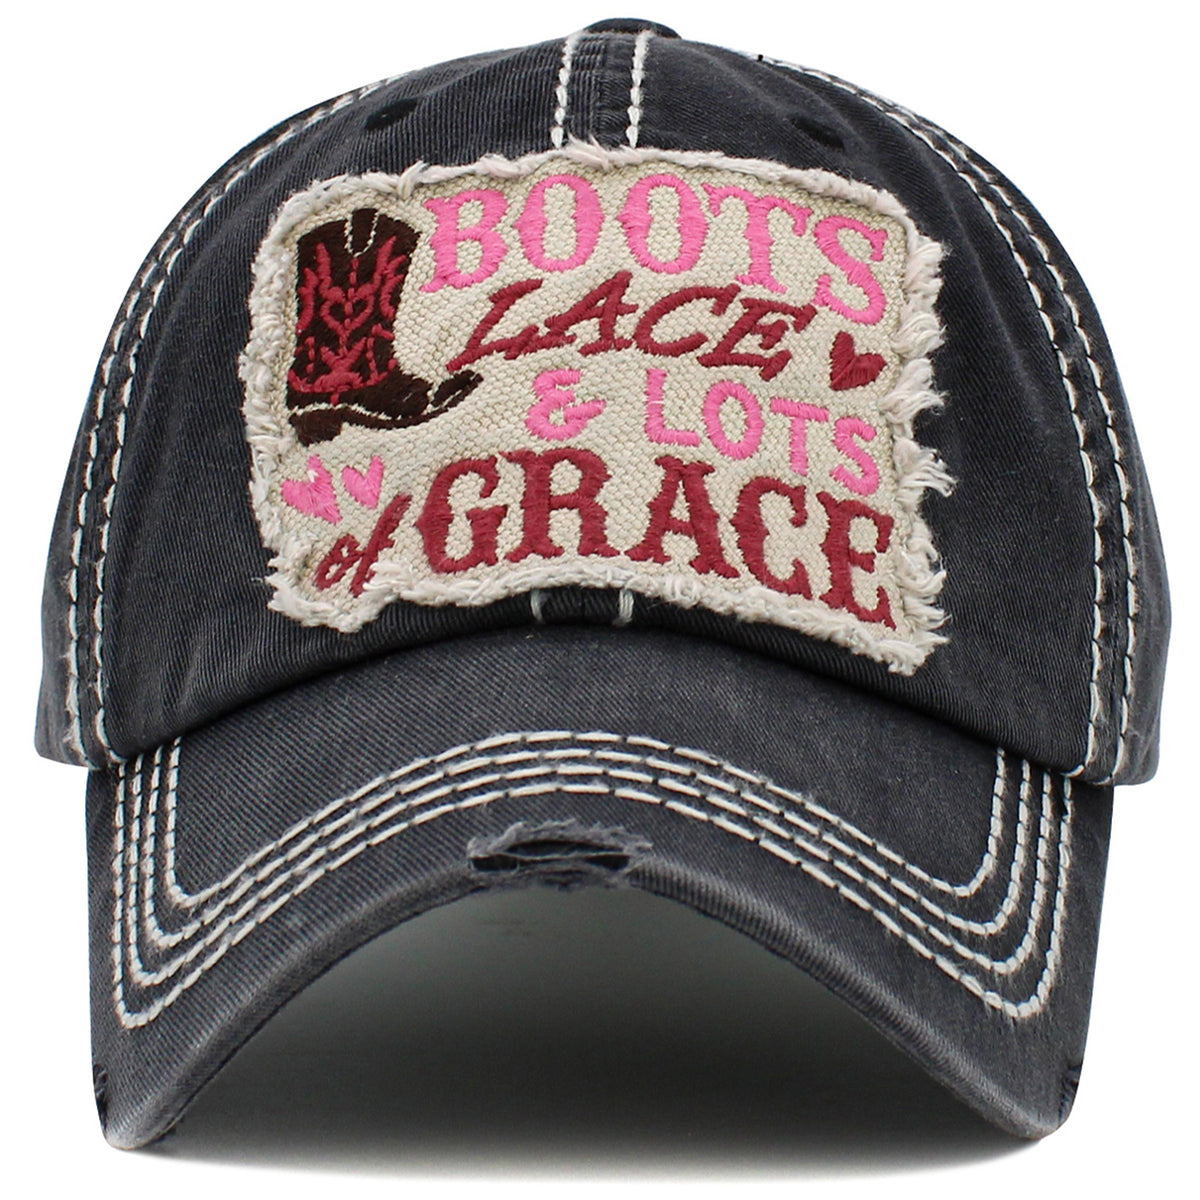 1491 - Boots Lace & Lots of Grace Hat - Black